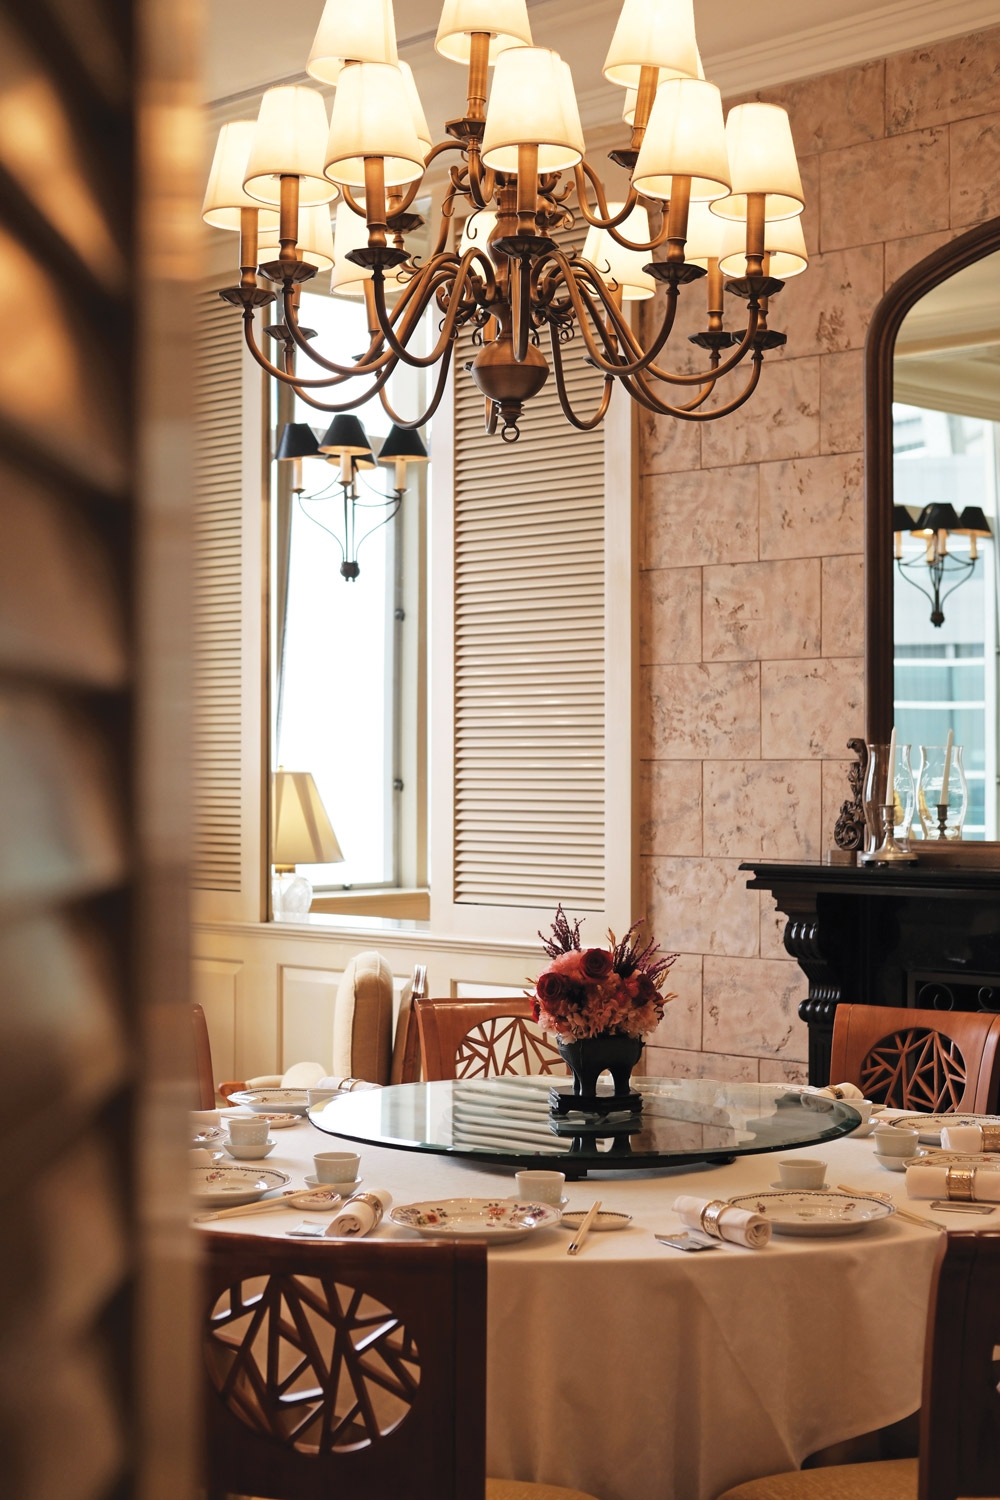 传统欧式风情、餐厅特别雅房，可以约定留给特别的你。